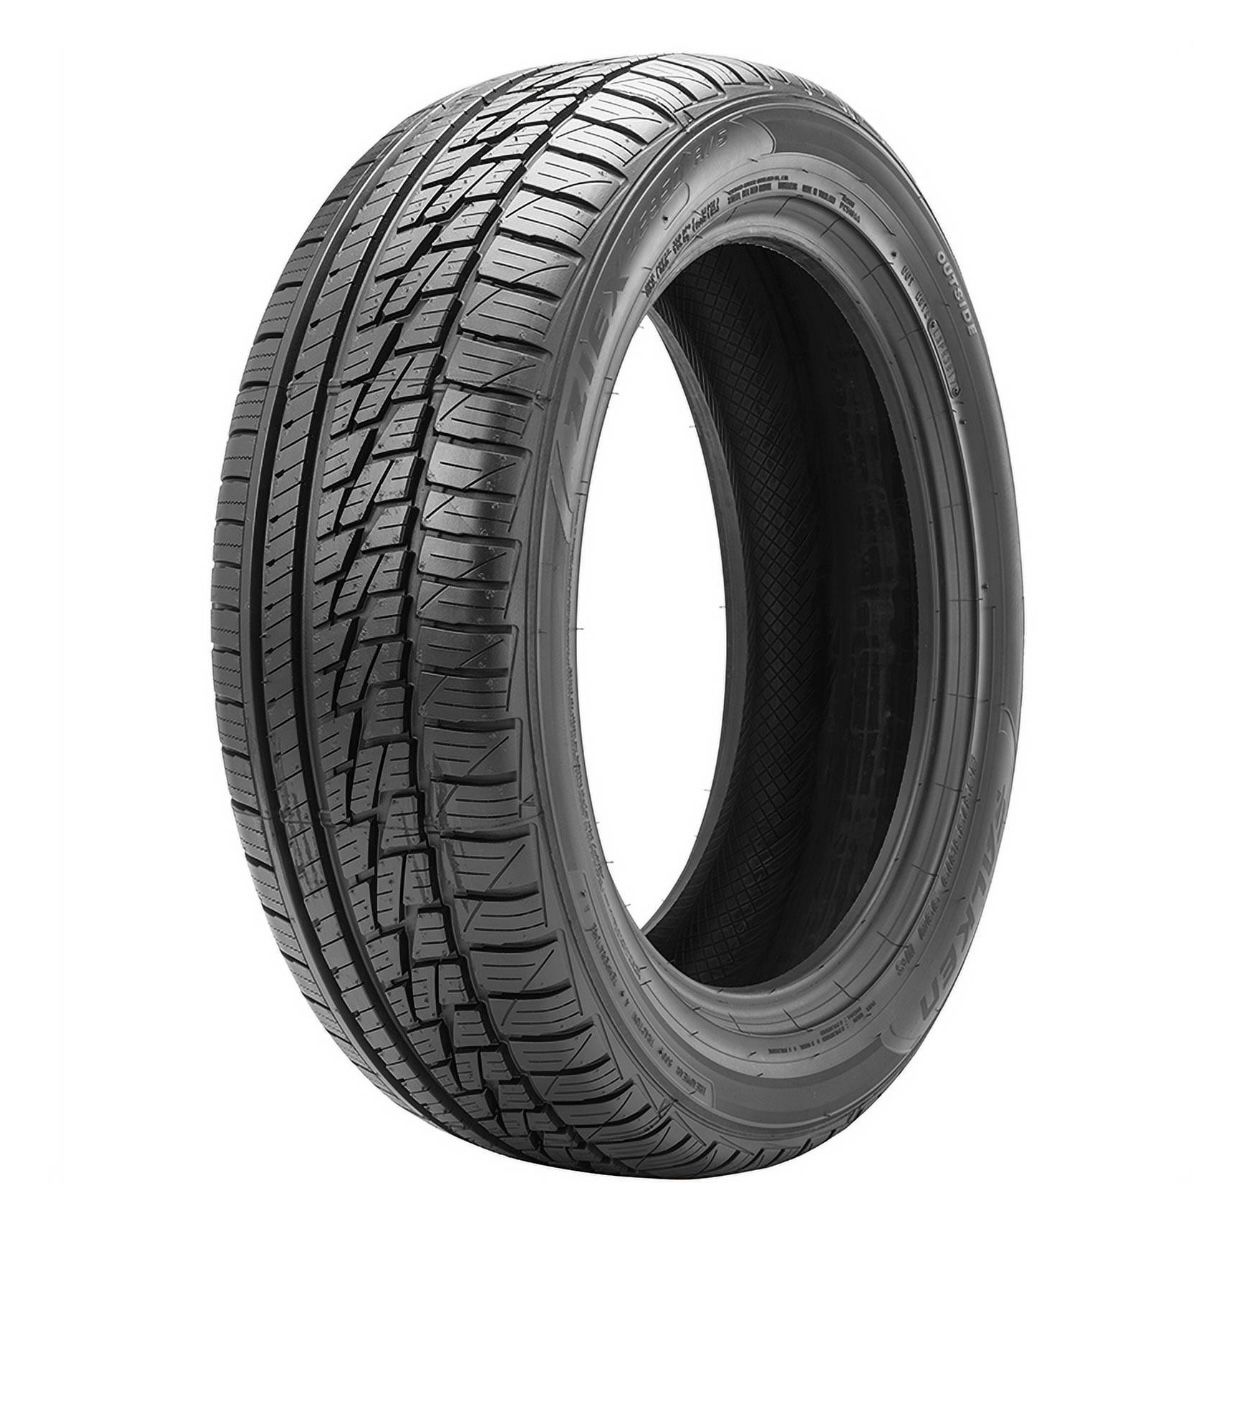 Falken Ziex ZE950 A/S 215/45R17 4 Tires